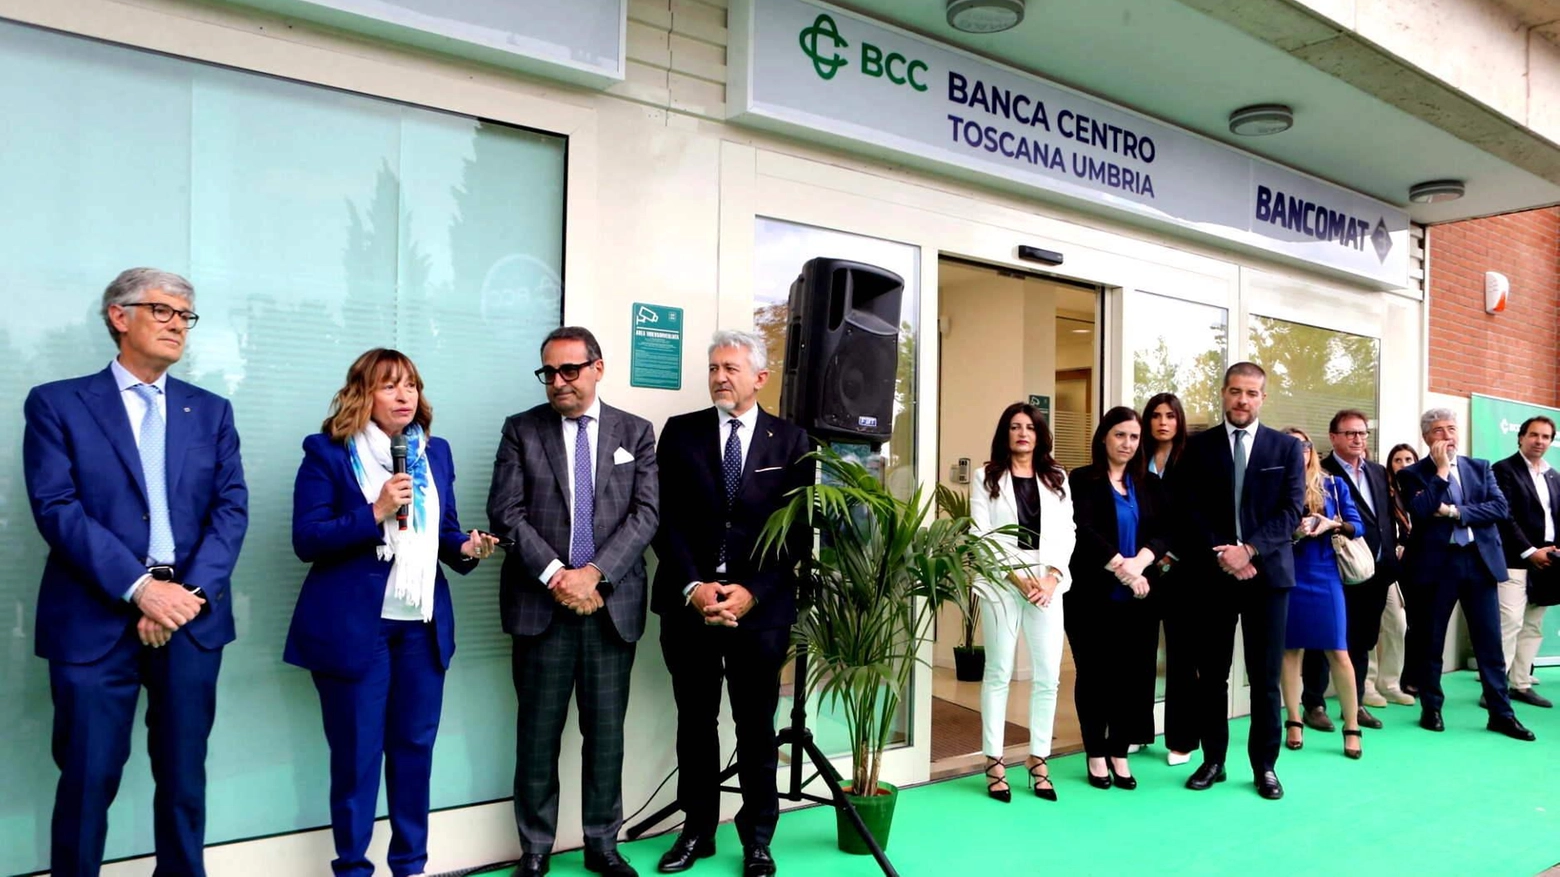 Banca Centro Toscana Umbria per Foligno. Aperta la nuova filiale: "Vicini al territorio"